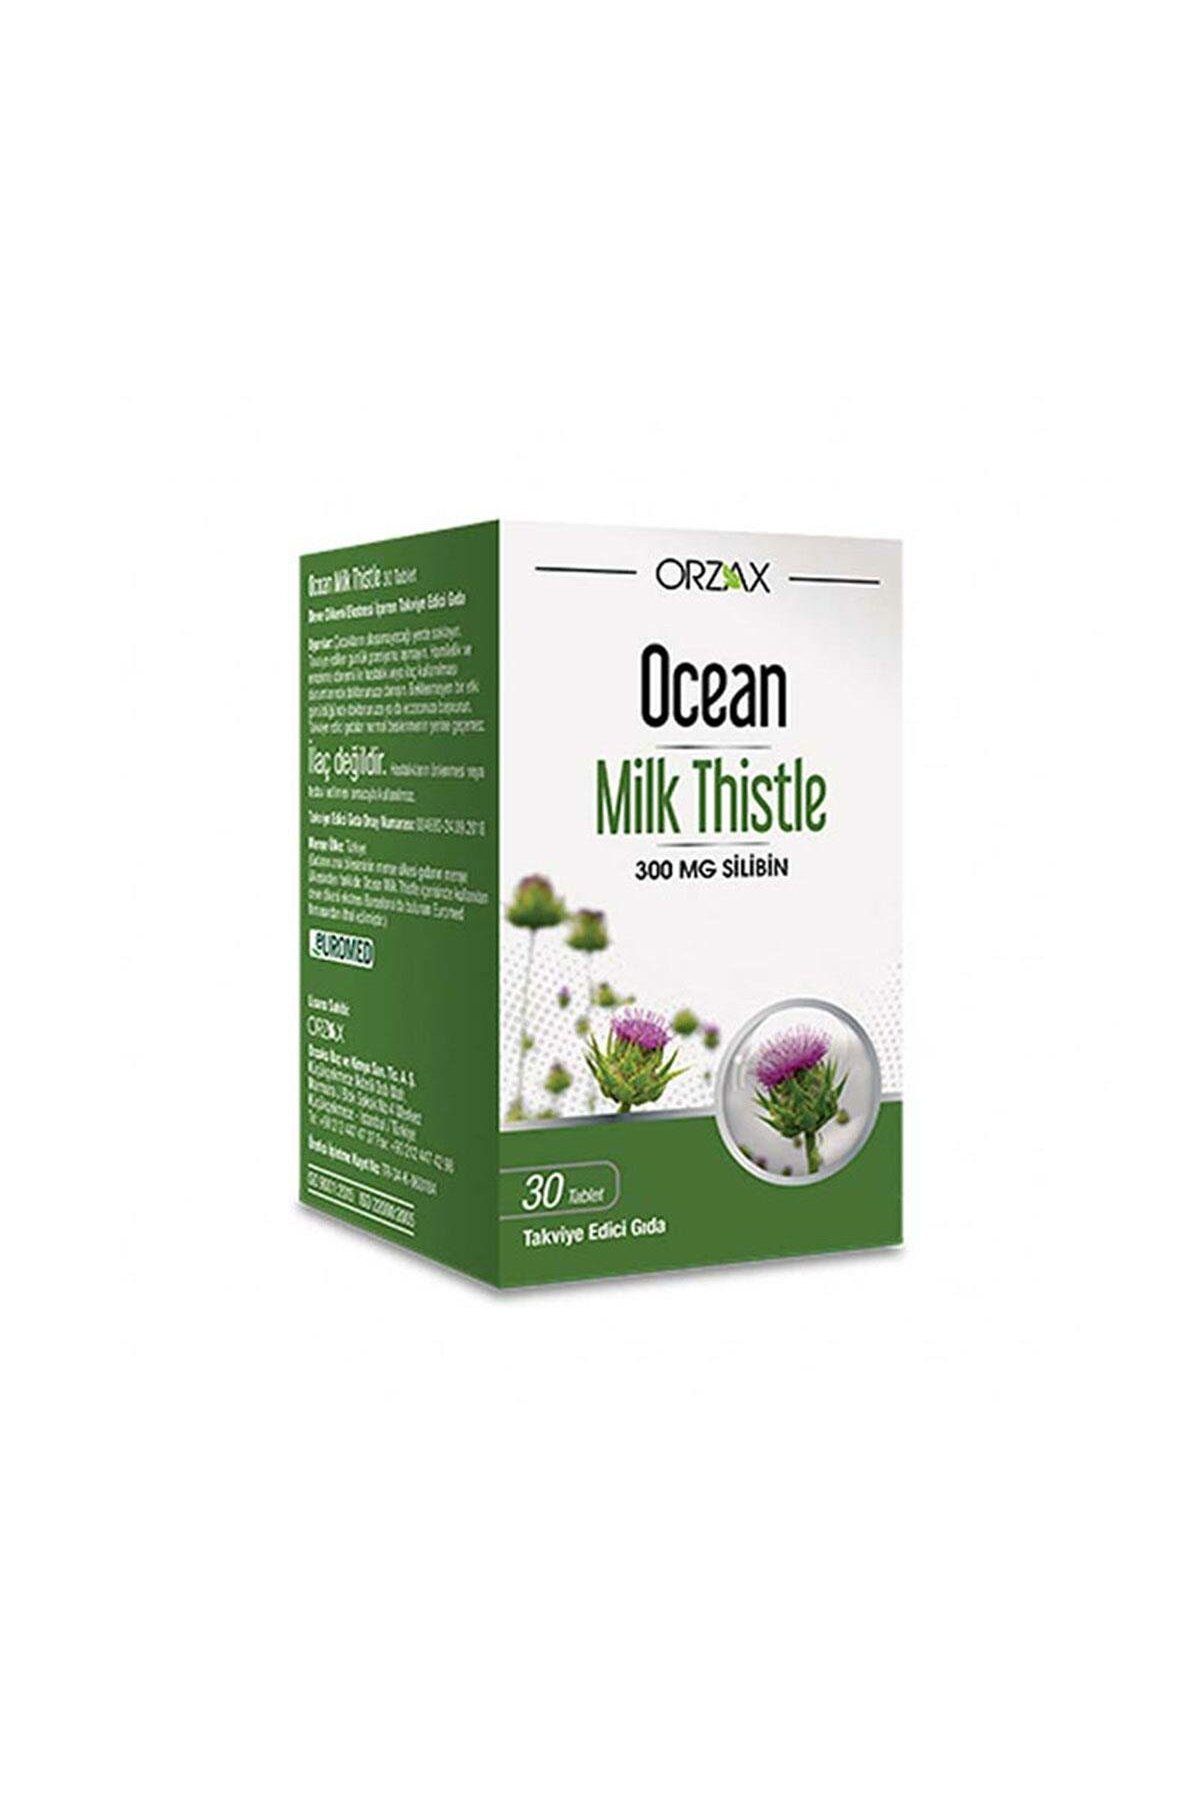 Ocean Milk Thistle 30 Tablet Deve Dikeni İçerikli Takviye Edici Gıda + Facial Cleanser 100ml Hediyeli